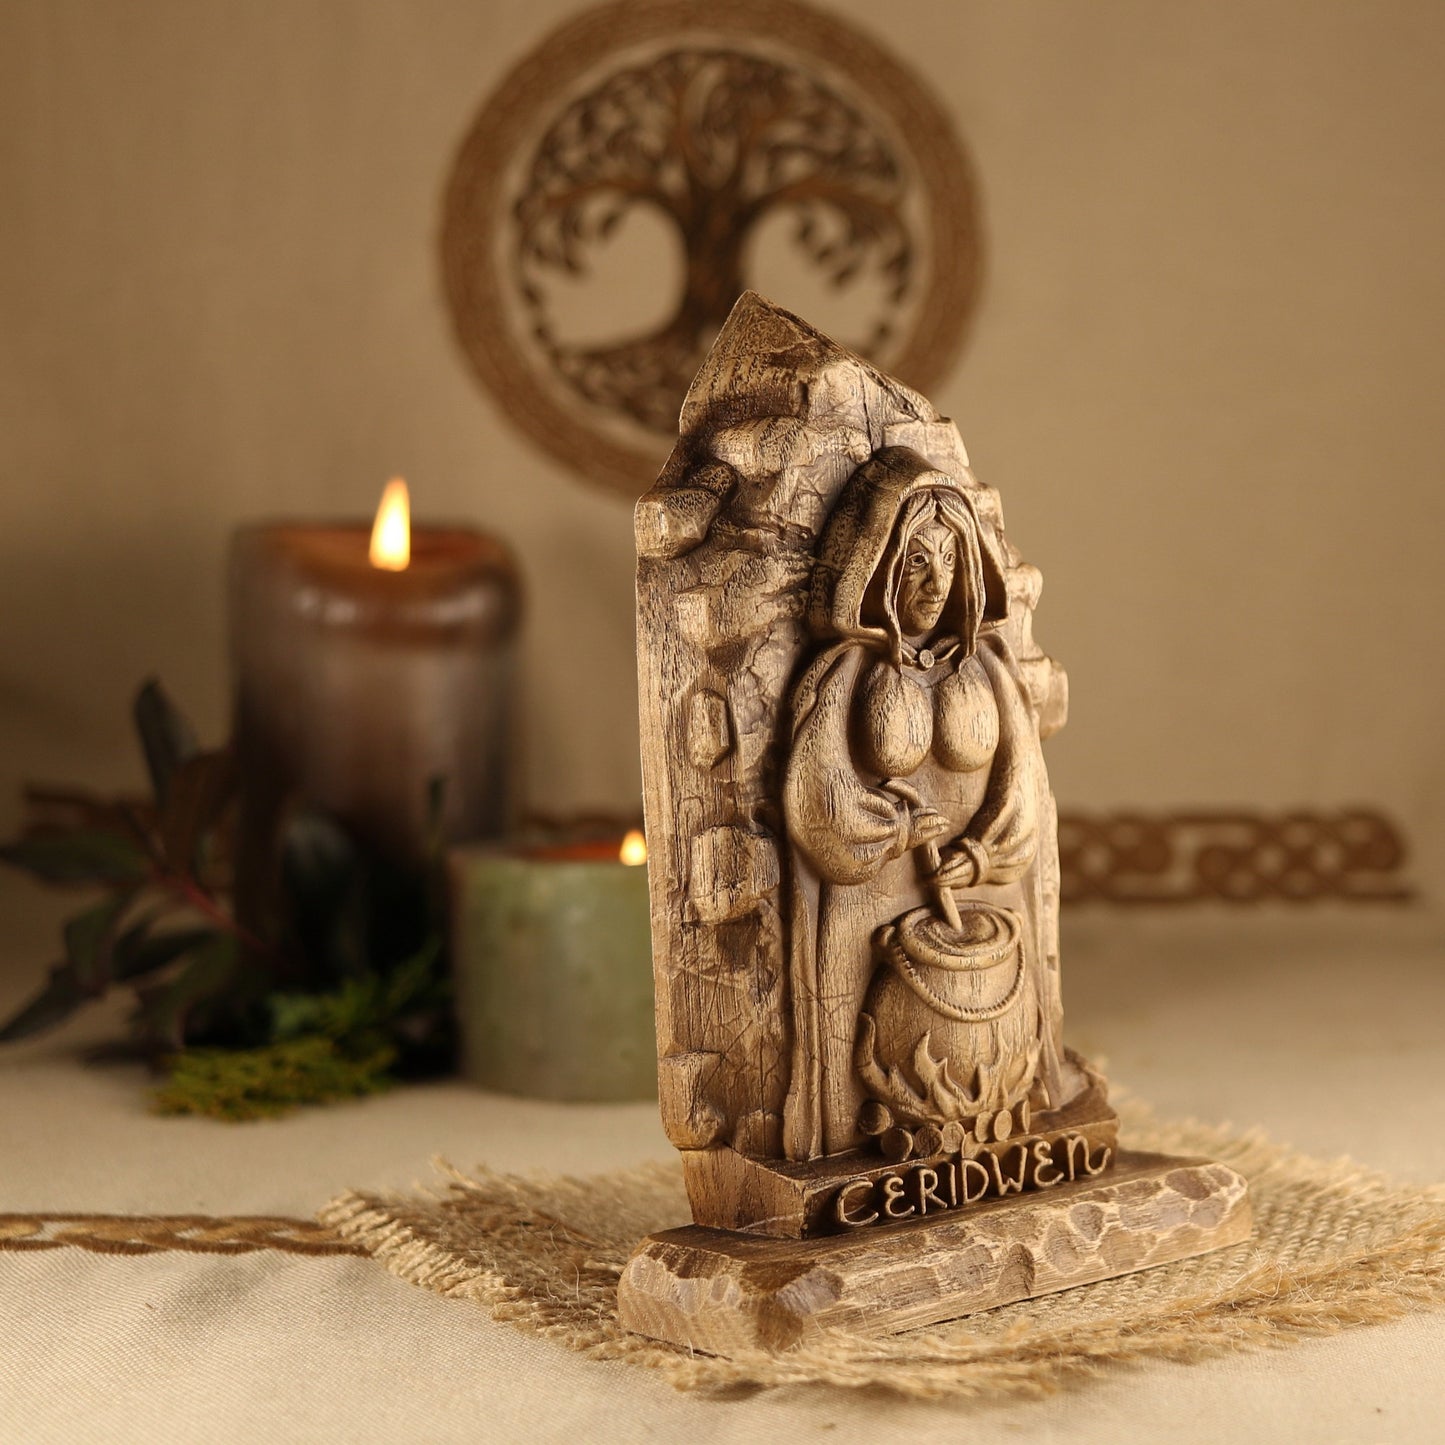 Cerridwen, Welsh goddess, Wooden mini statue